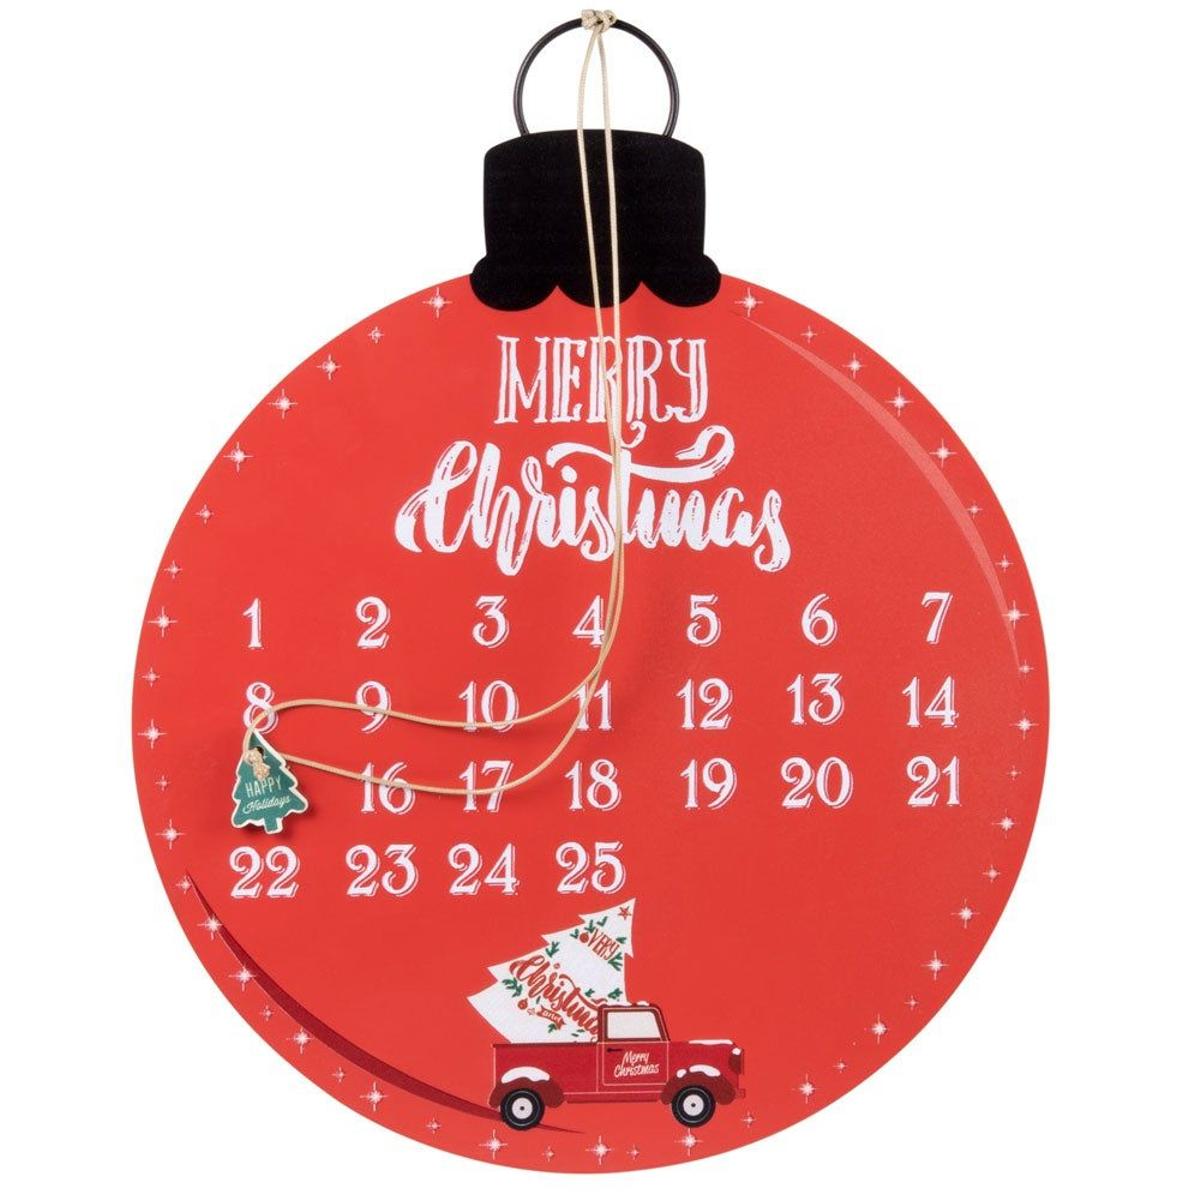 Bola de Navidad de calendario de adviento roja, blanca y verde. (Precio: 9,99 euros)